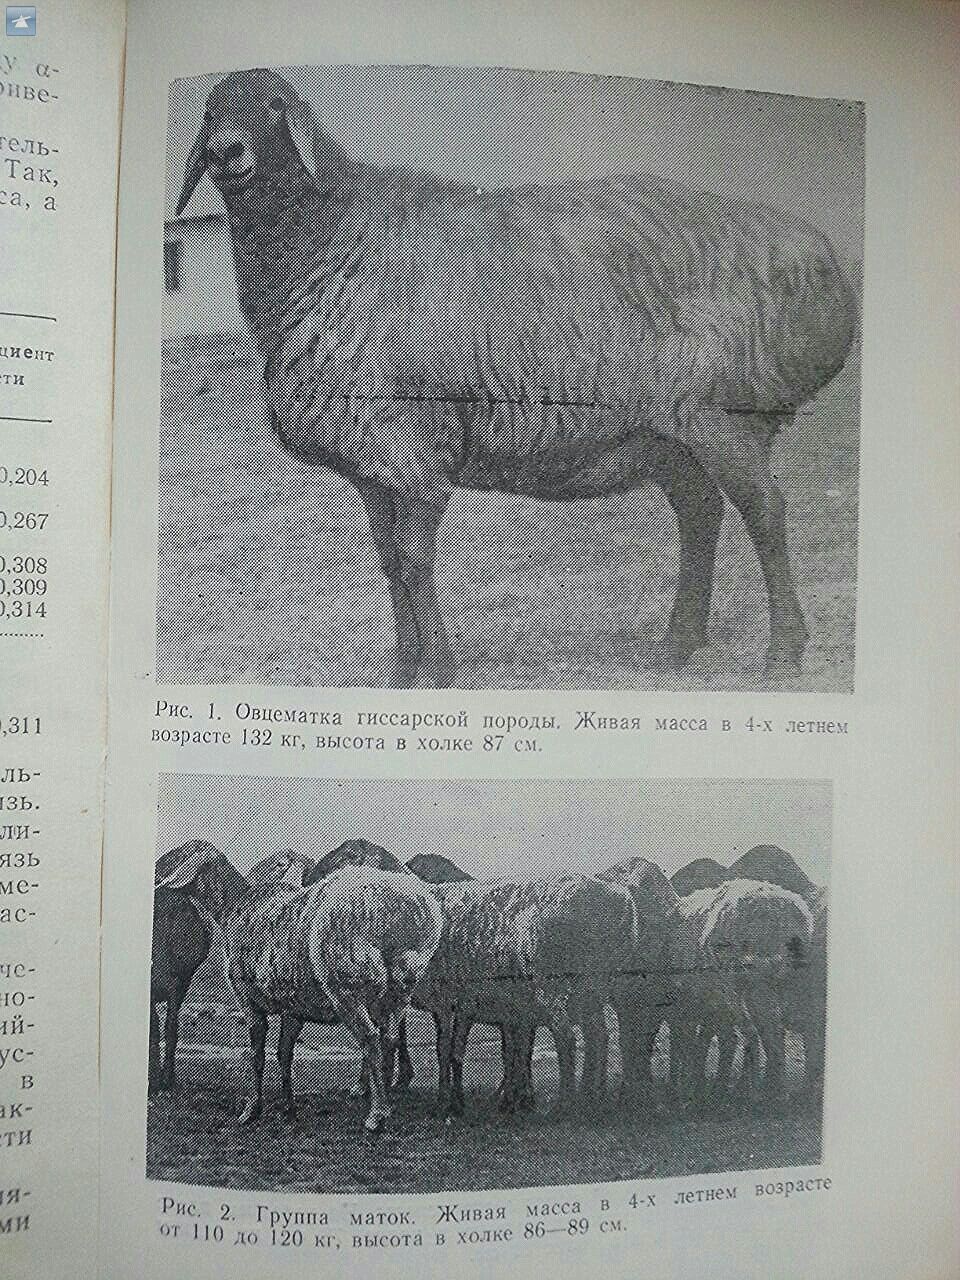 Сколько вес барана. Гиссарская порода Баранов вес. Гиссарийская порода овец. Баран гиссарской породы вес. Гиссарская порода овец вес.